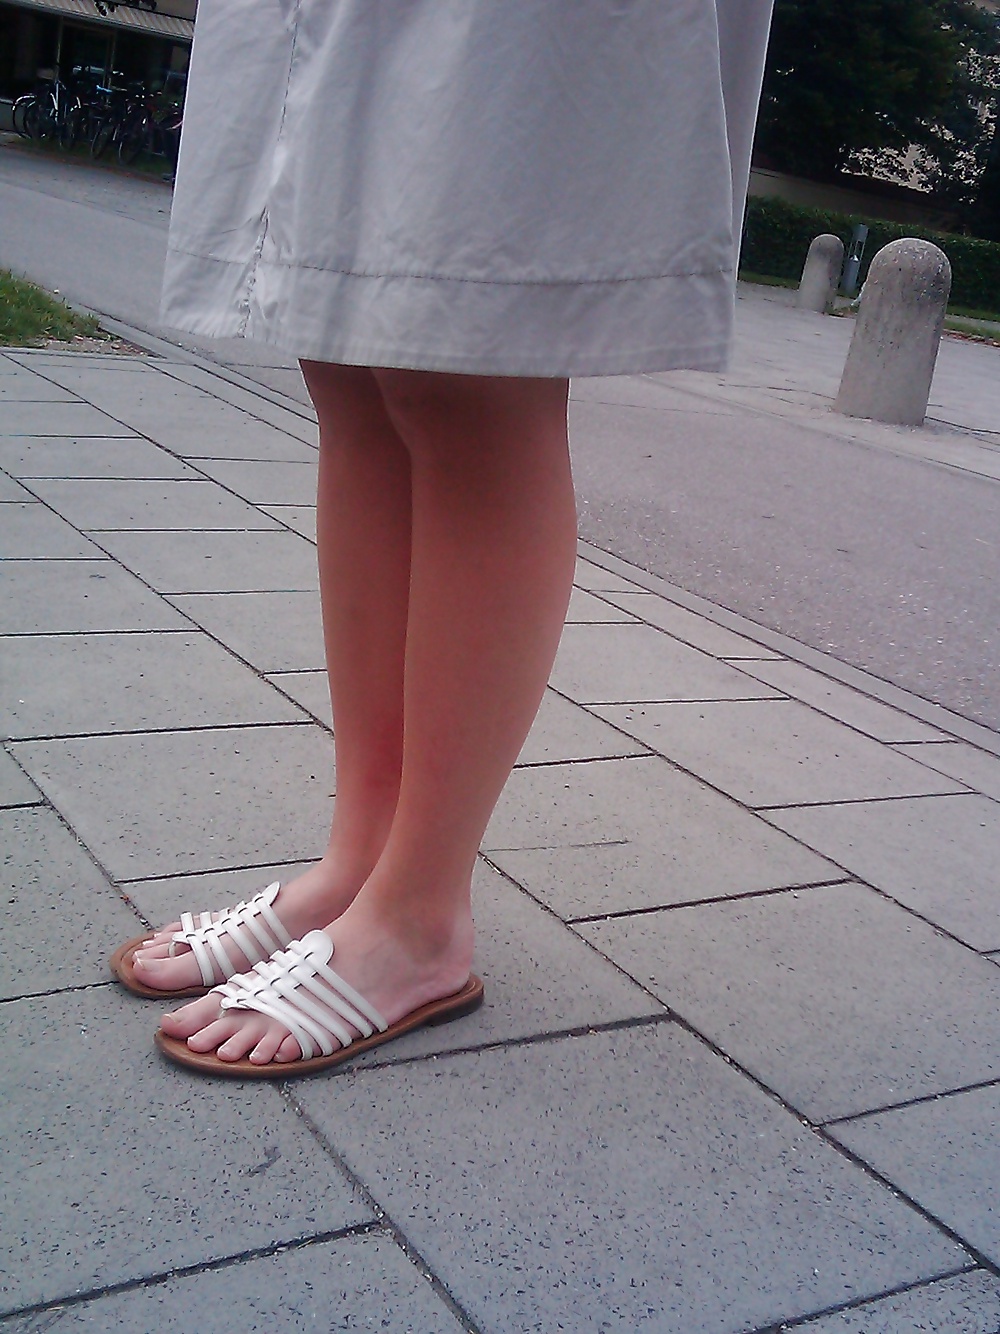 Feet of July 2012 #34406537